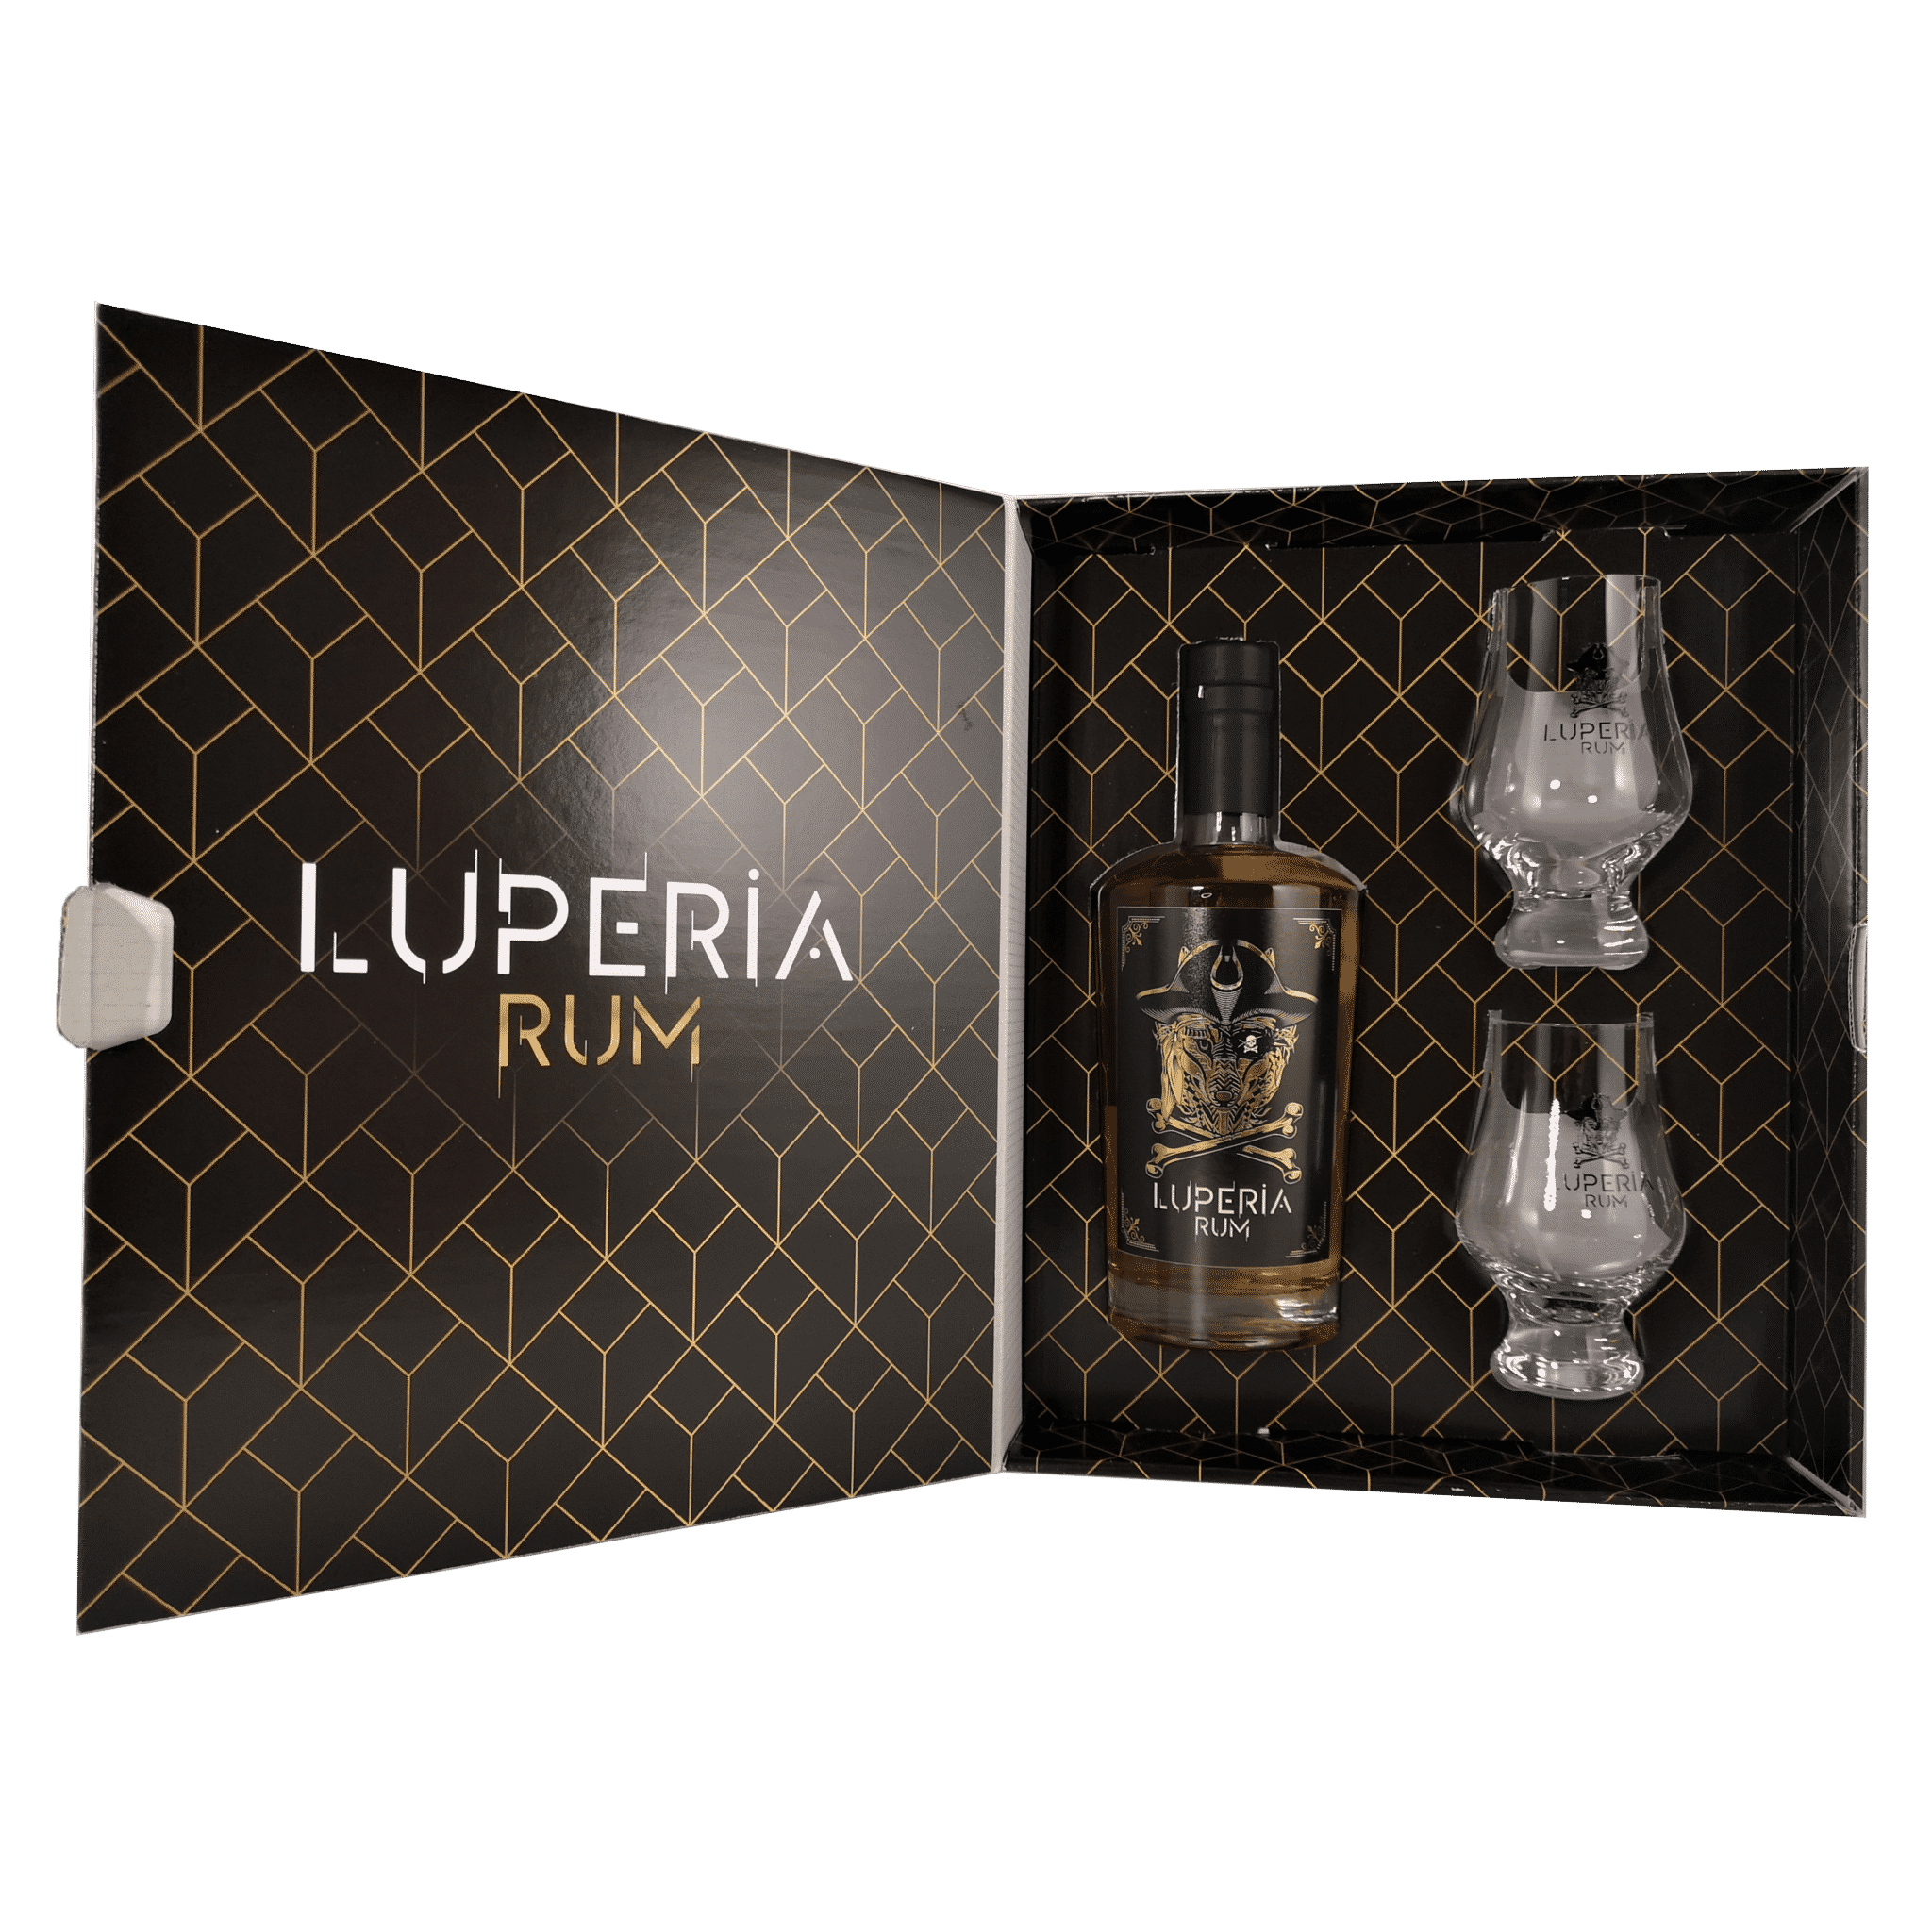 Acquista il Confezione Luperia Rum / 2 bicchieri sul negozio online Vinico